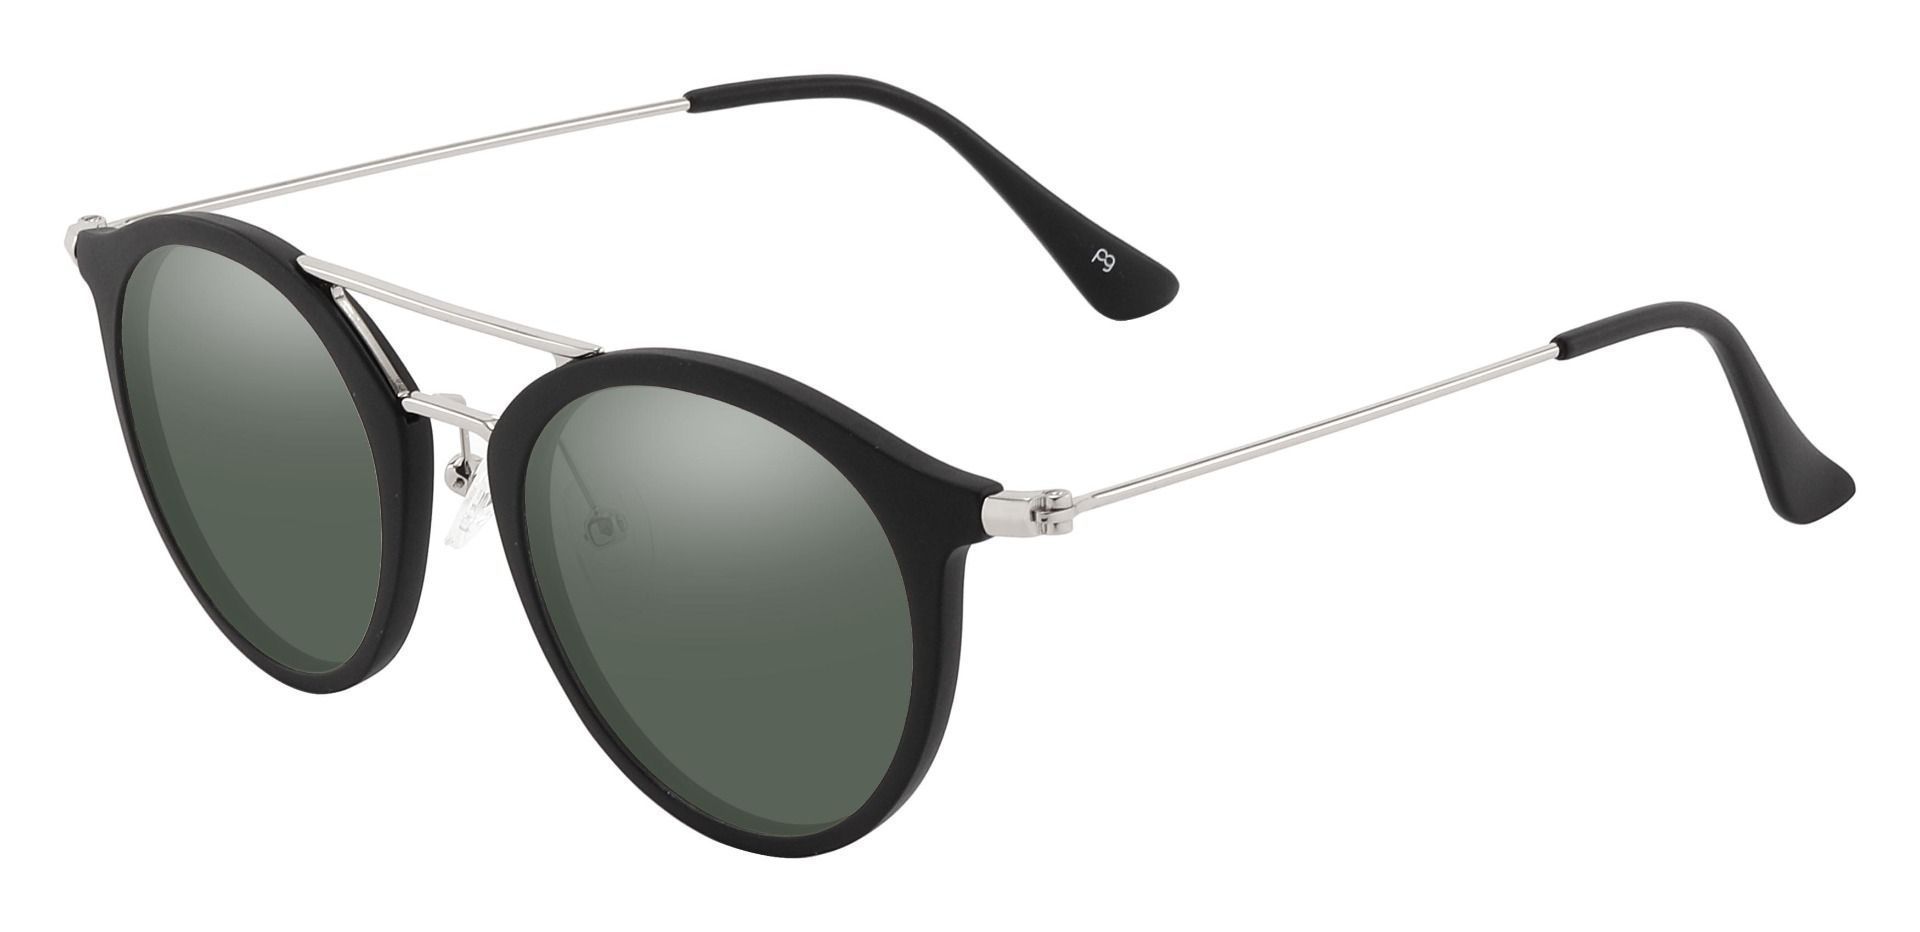 Malden Aviator Prescription Sunglasses - Black Frame With Green Lenses